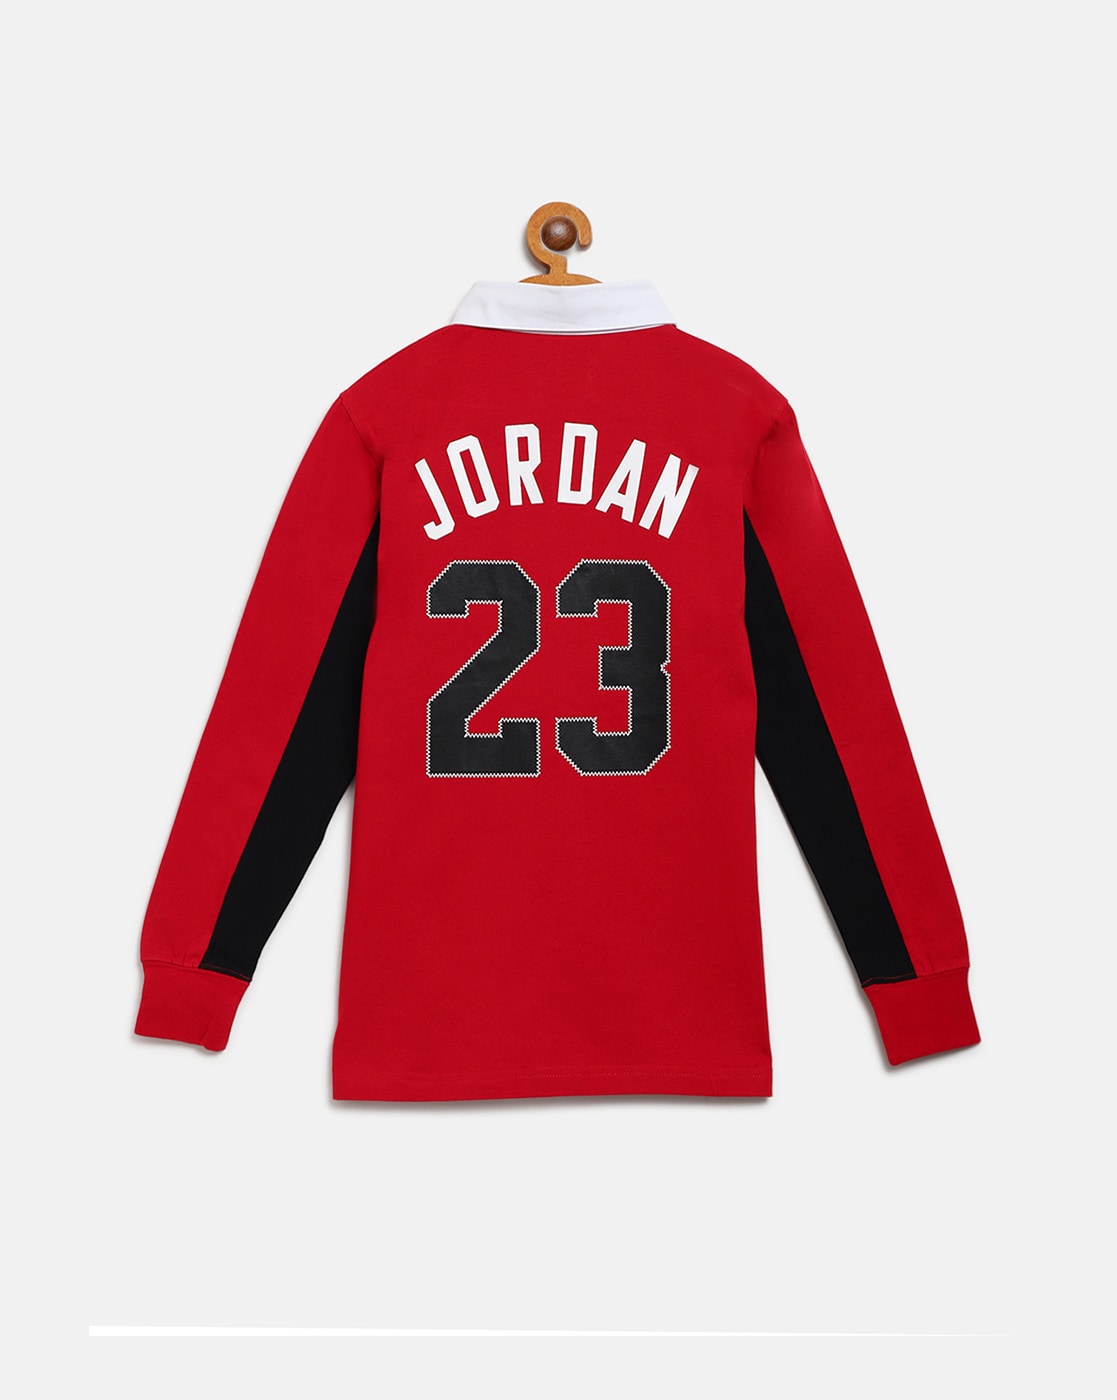 Buy Jordan T Shirt 23 Online In India -  India